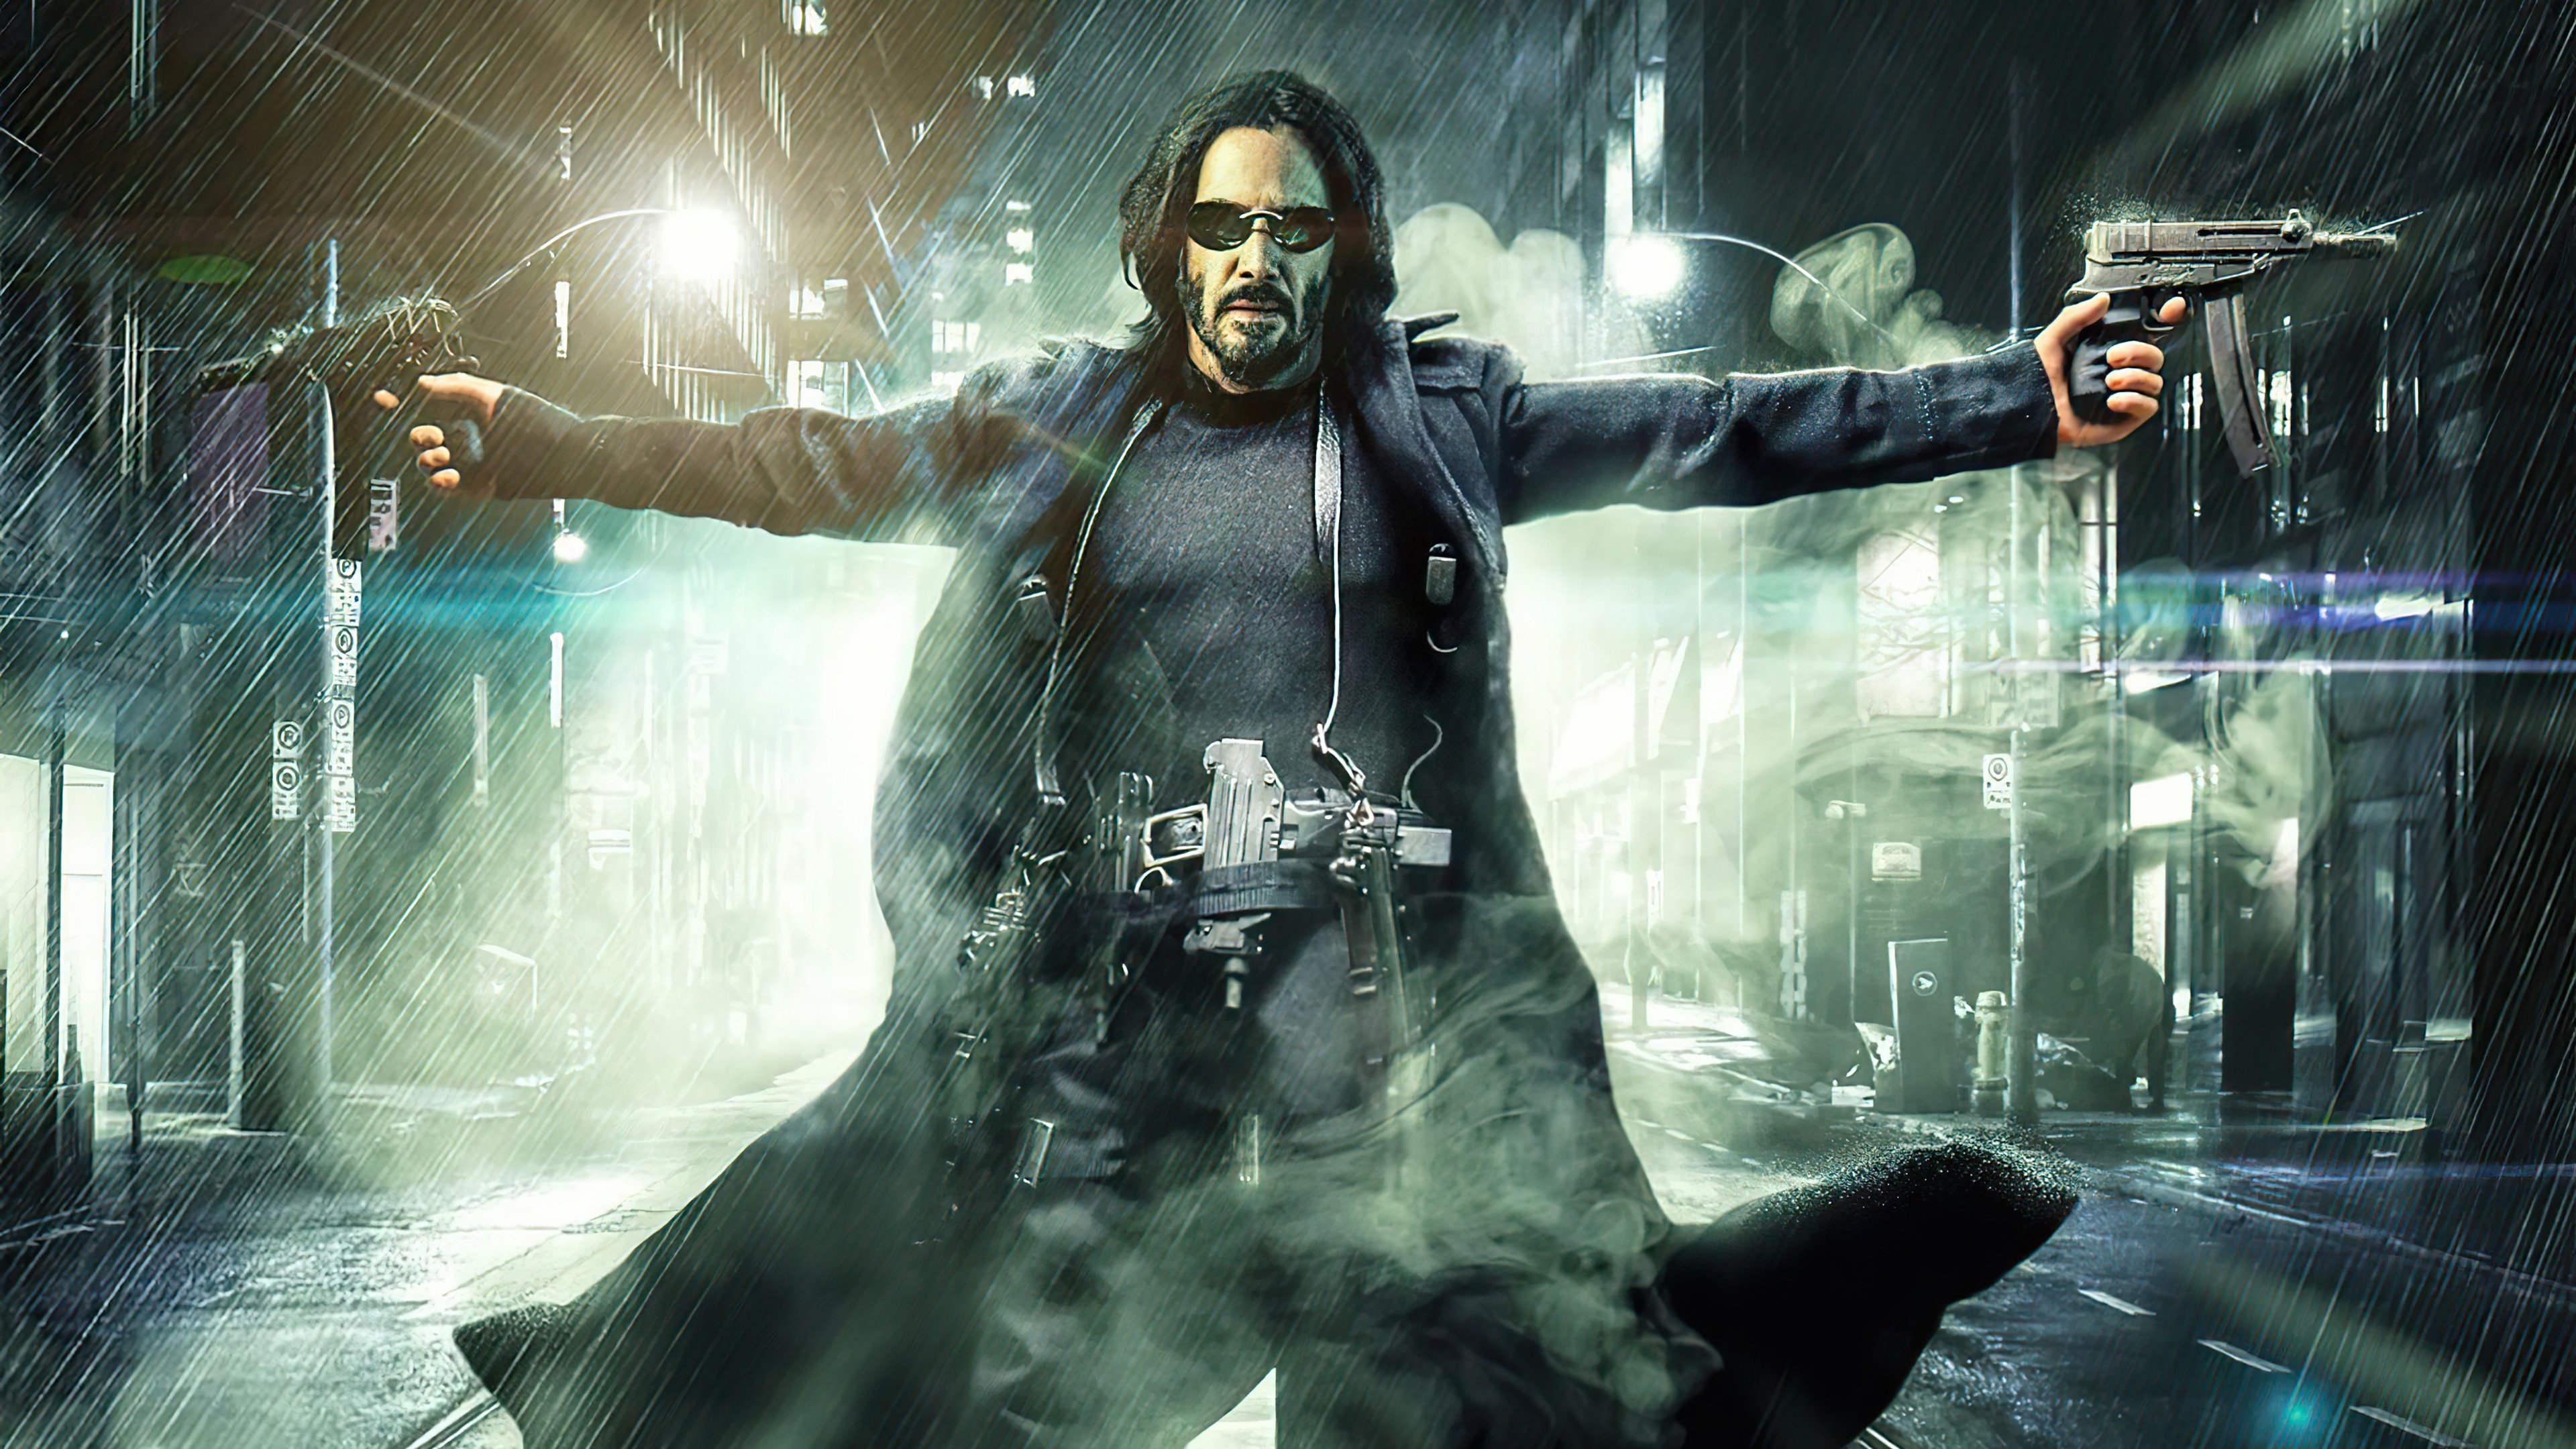 Fondos de pantalla Keanu Reeves en Matrix Resurrections